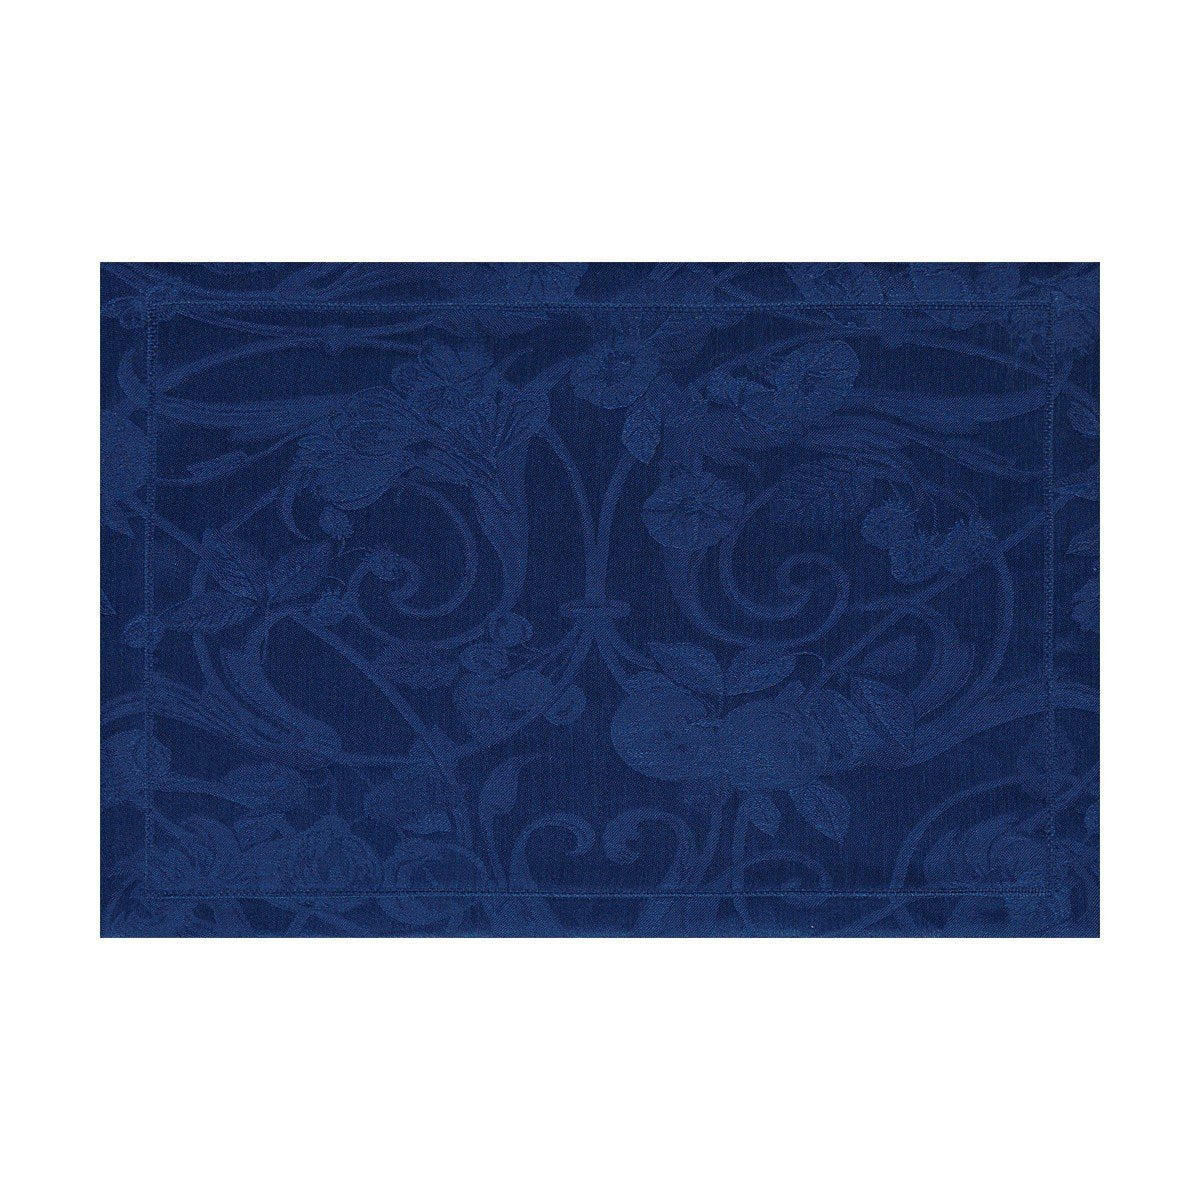 Le Jacquard Français Table Linen Tivoli in Sapphire Navy Blue Fig Linens placemat